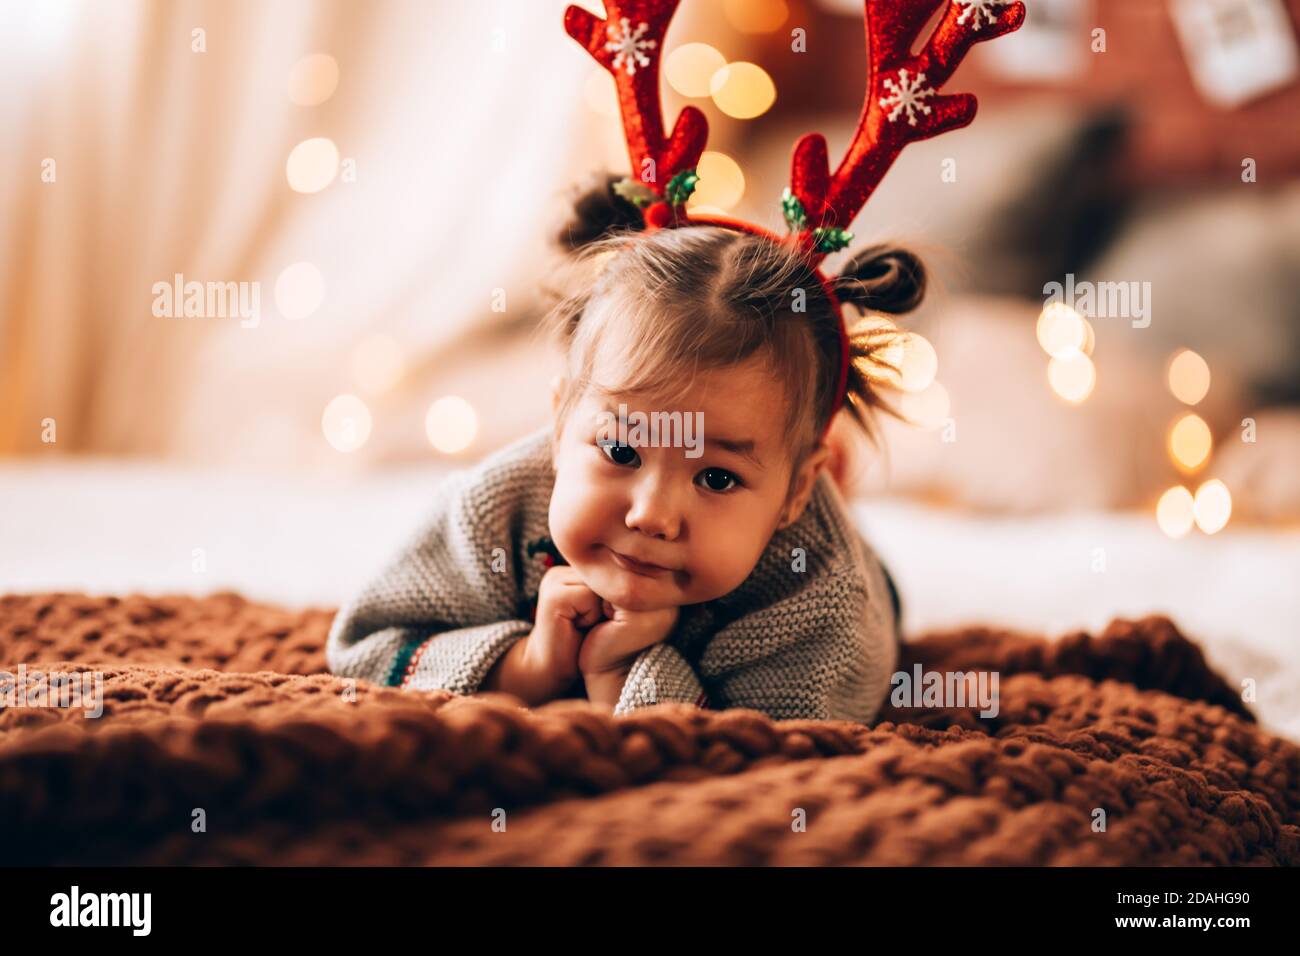 Kleines Mädchen liegt auf einem großen Bett. Das Kind hat Geweihe auf dem Kopf. Weihnachtsstimmung. Stockfoto